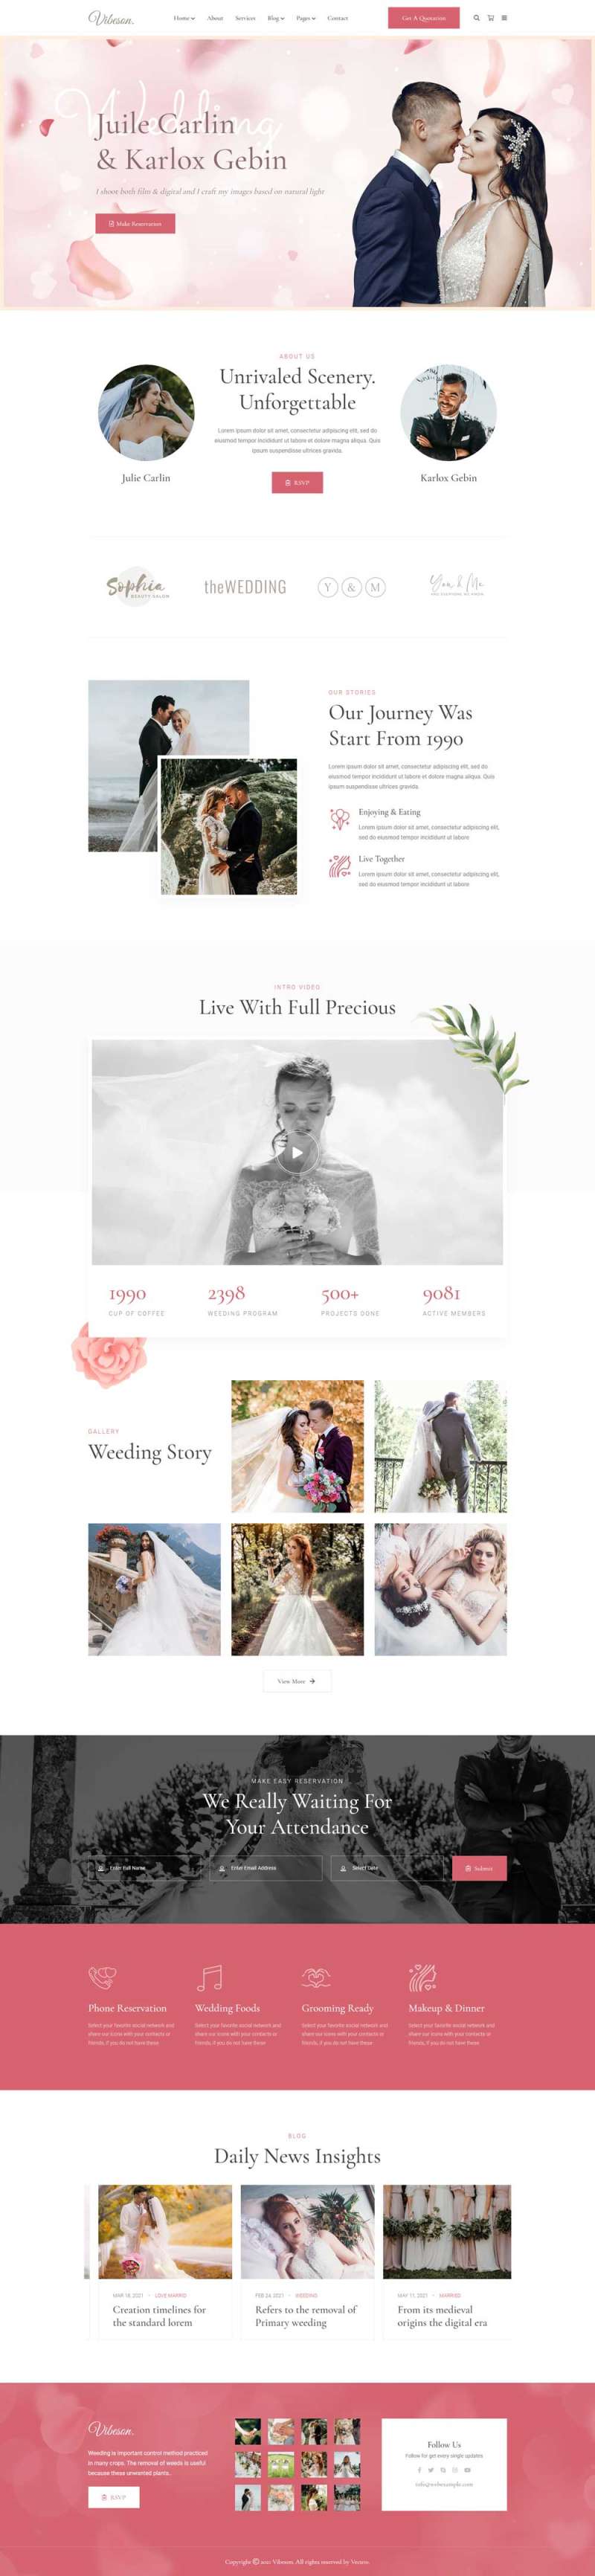 精美的婚礼活动策划摄影HTML模板-推推论坛